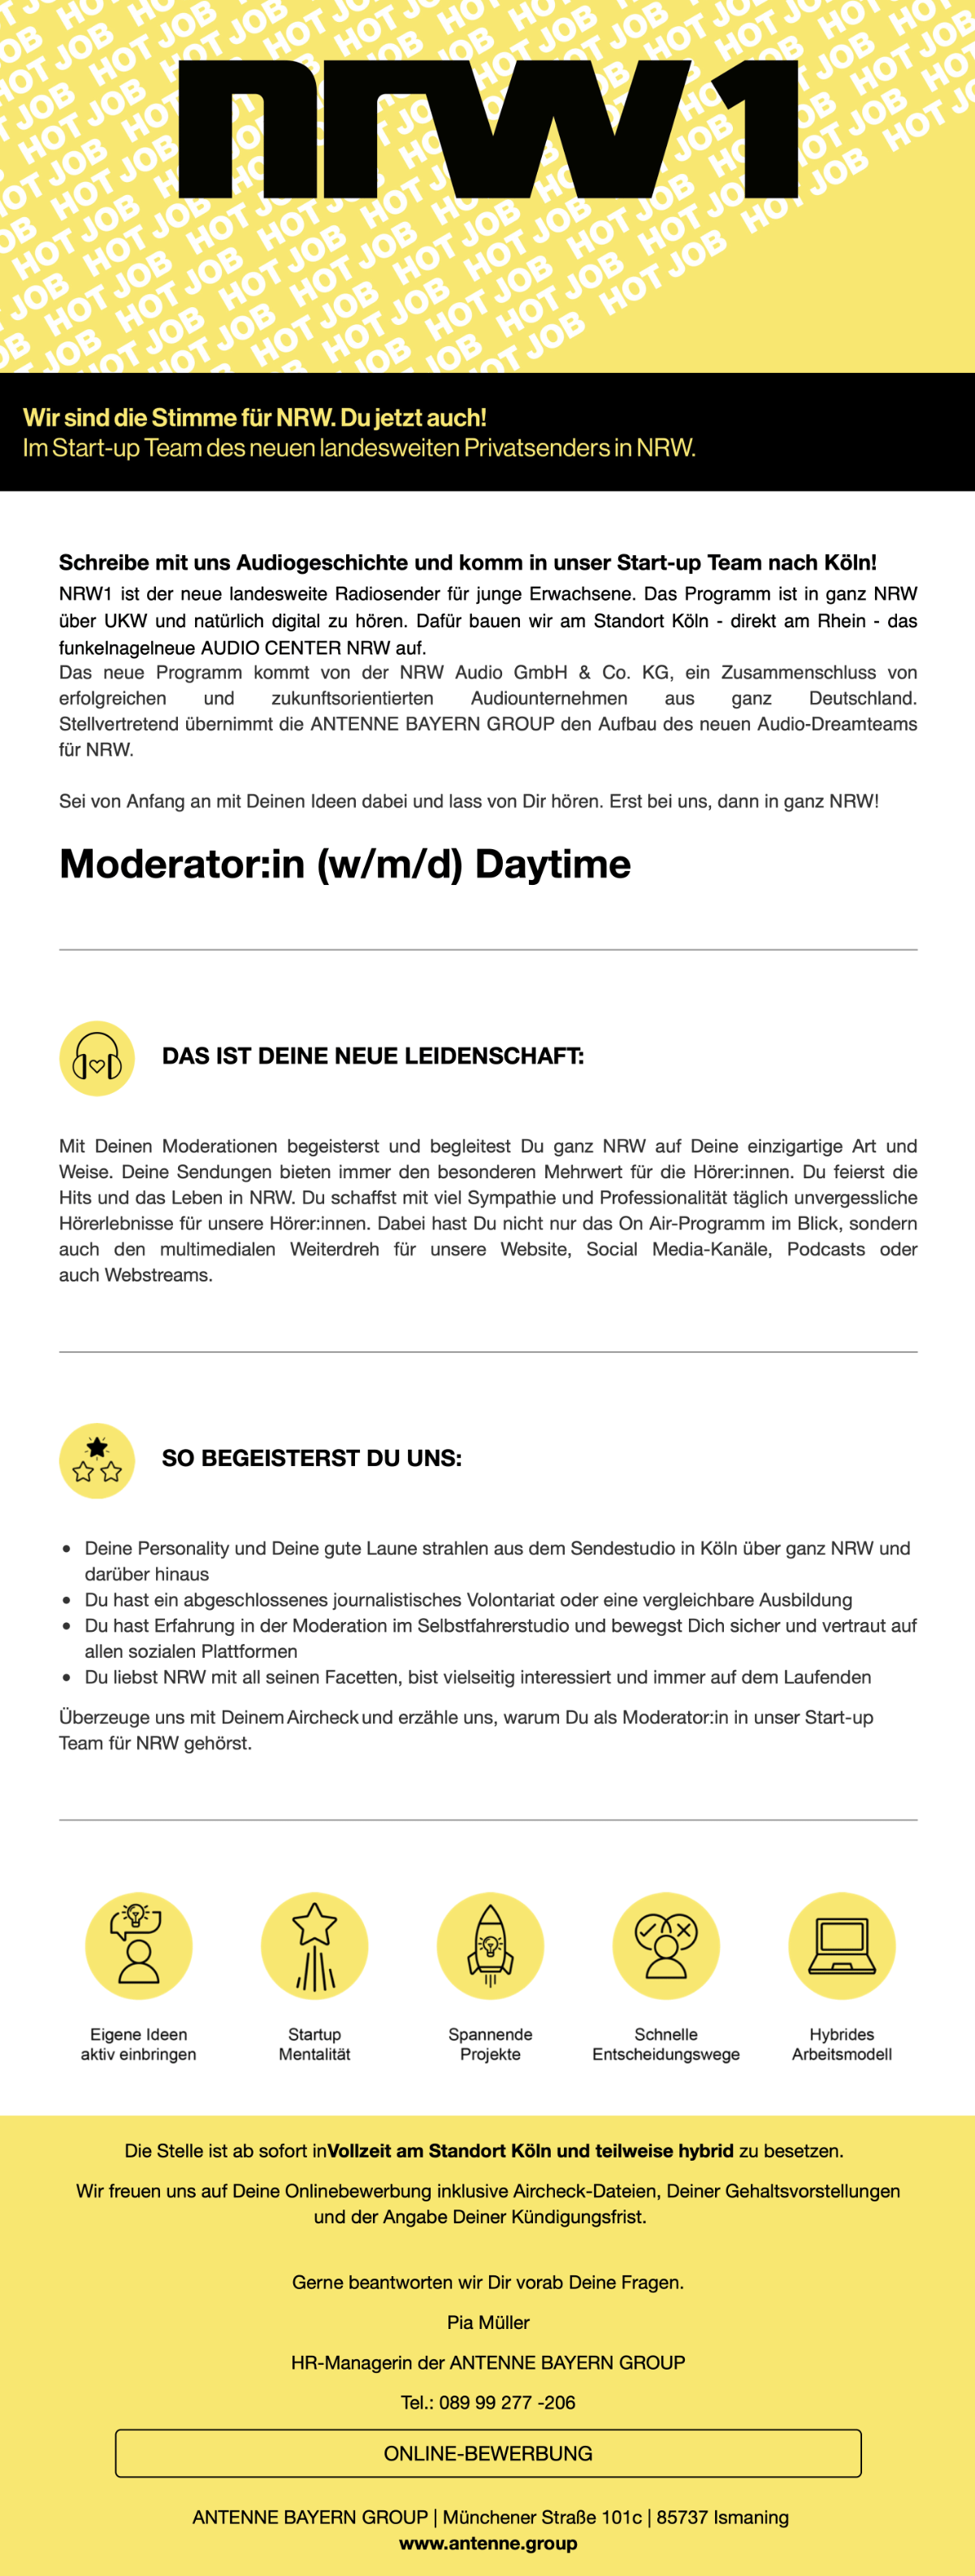 NRW1 sucht Moderator:in (m/w/d) Daytime